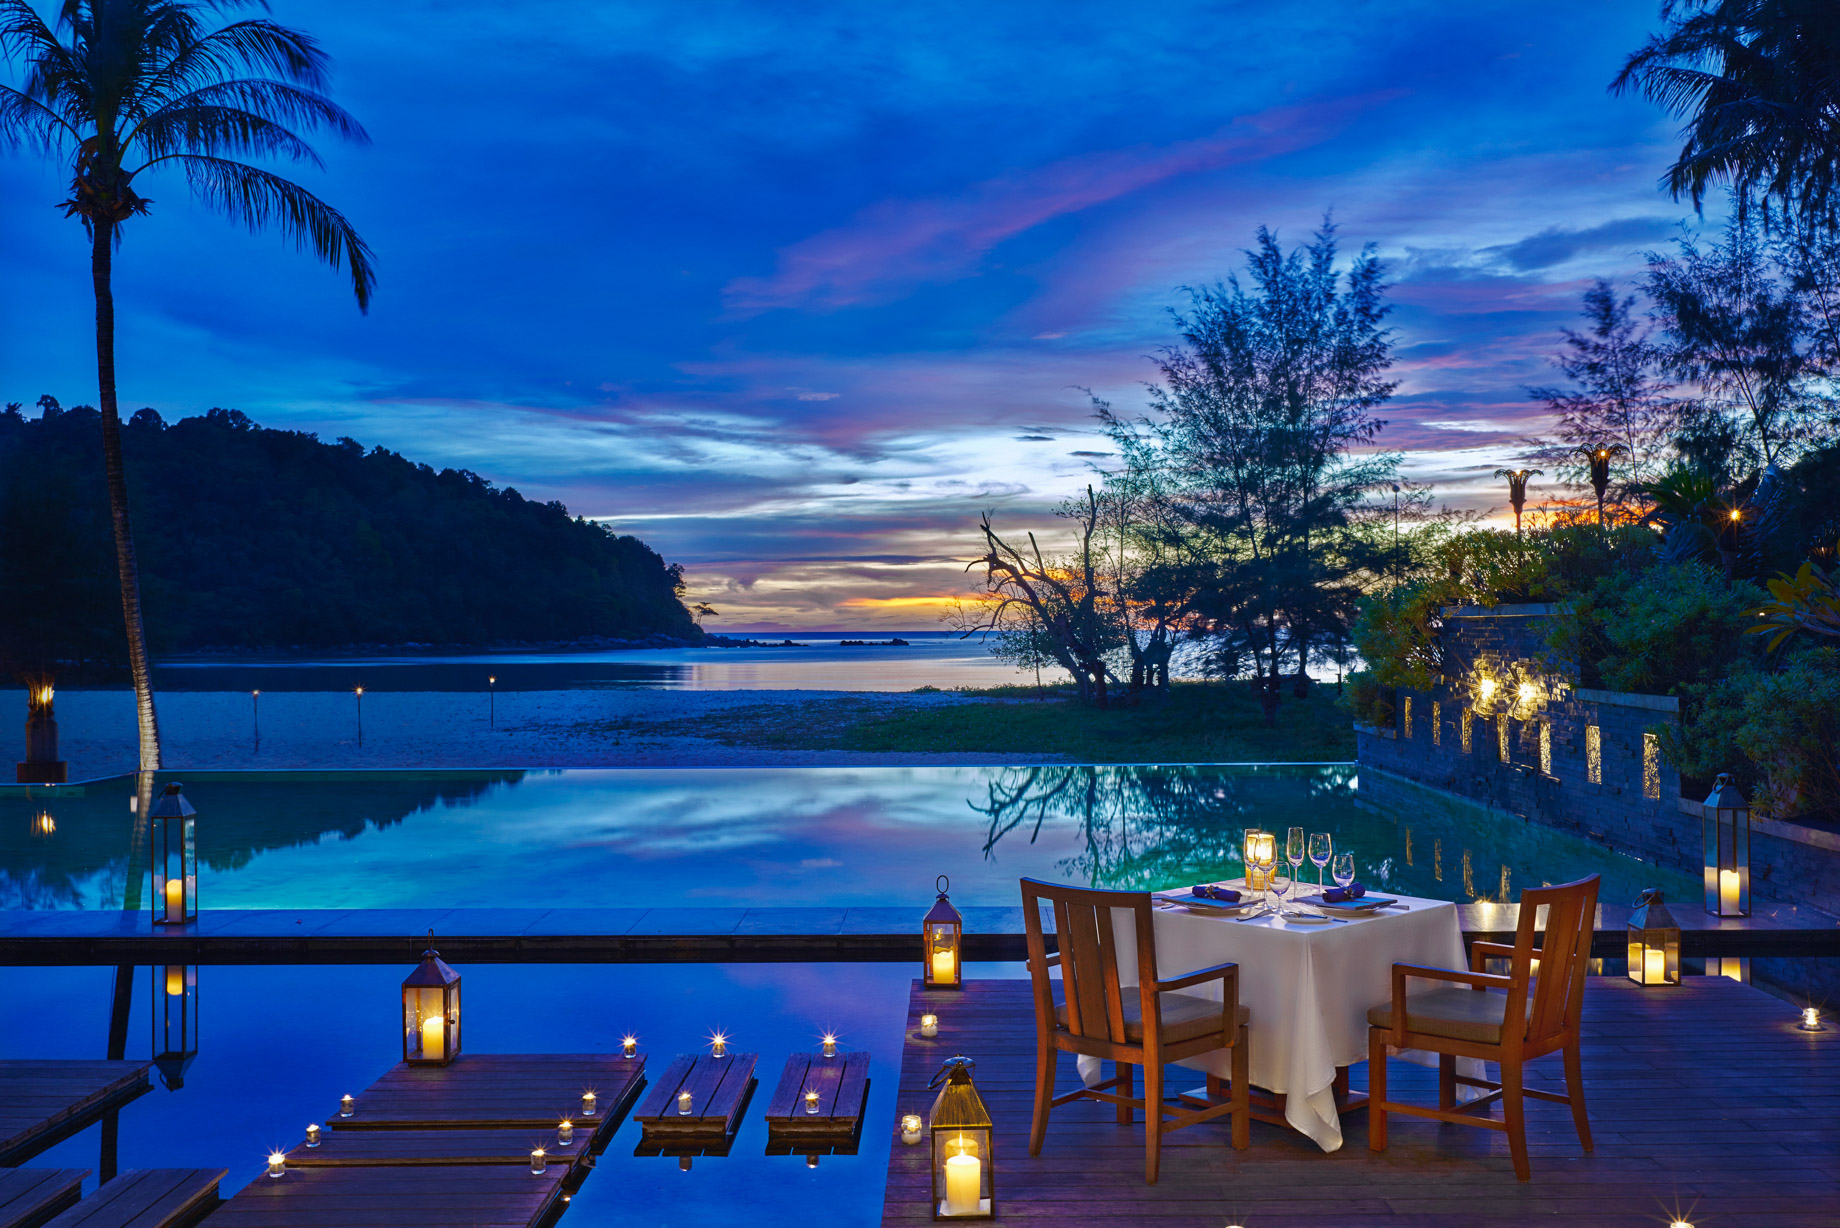 Anantara Layan Phuket Resort & Residences – Thailand – Pool Deck Dining Night View